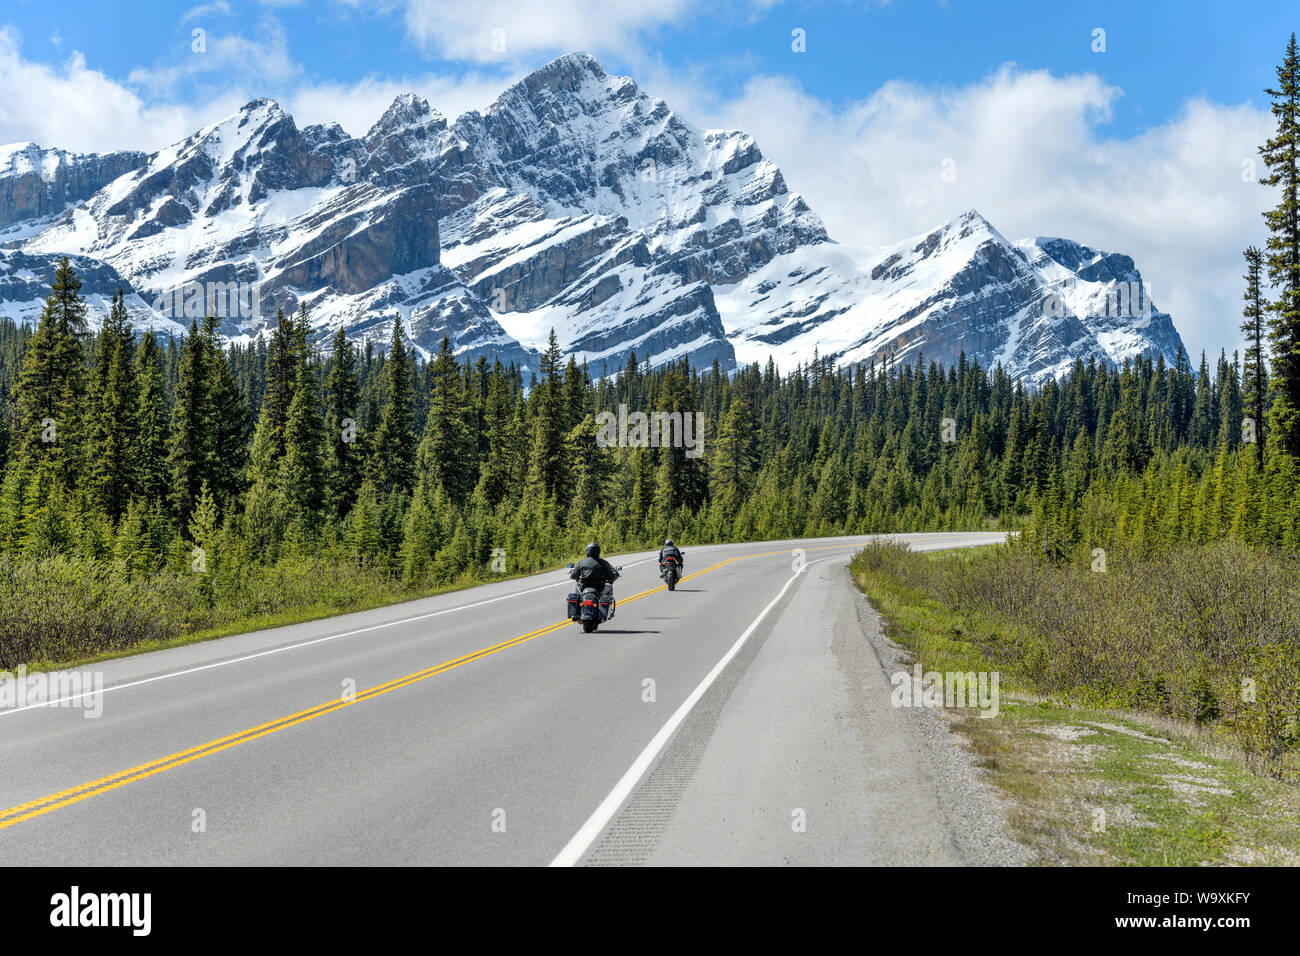 Équitation sur Promenade des Glaciers - deux motocyclistes bénéficiant scenic tour sur la promenade des Glaciers avec Mt. Patterson s'élevant à l'avant, le parc national Banff. Banque D'Images